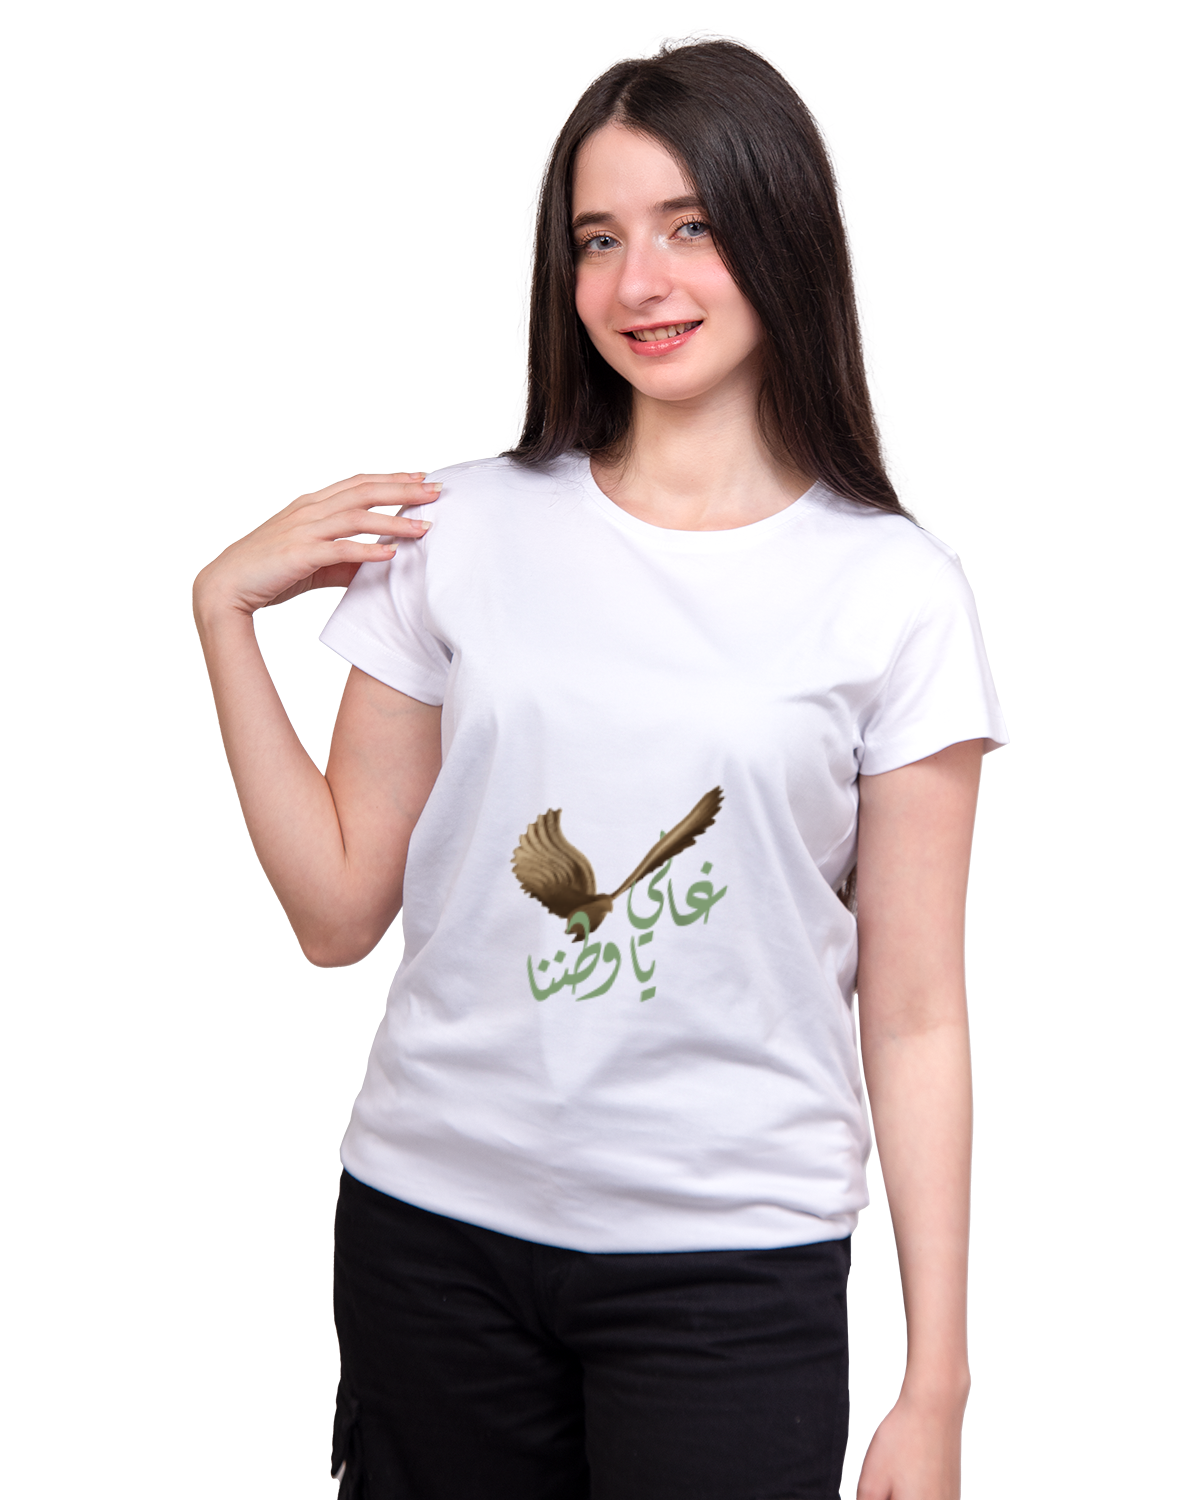 Women's Foundation Day T-shirt (Ghali ya Watanana)